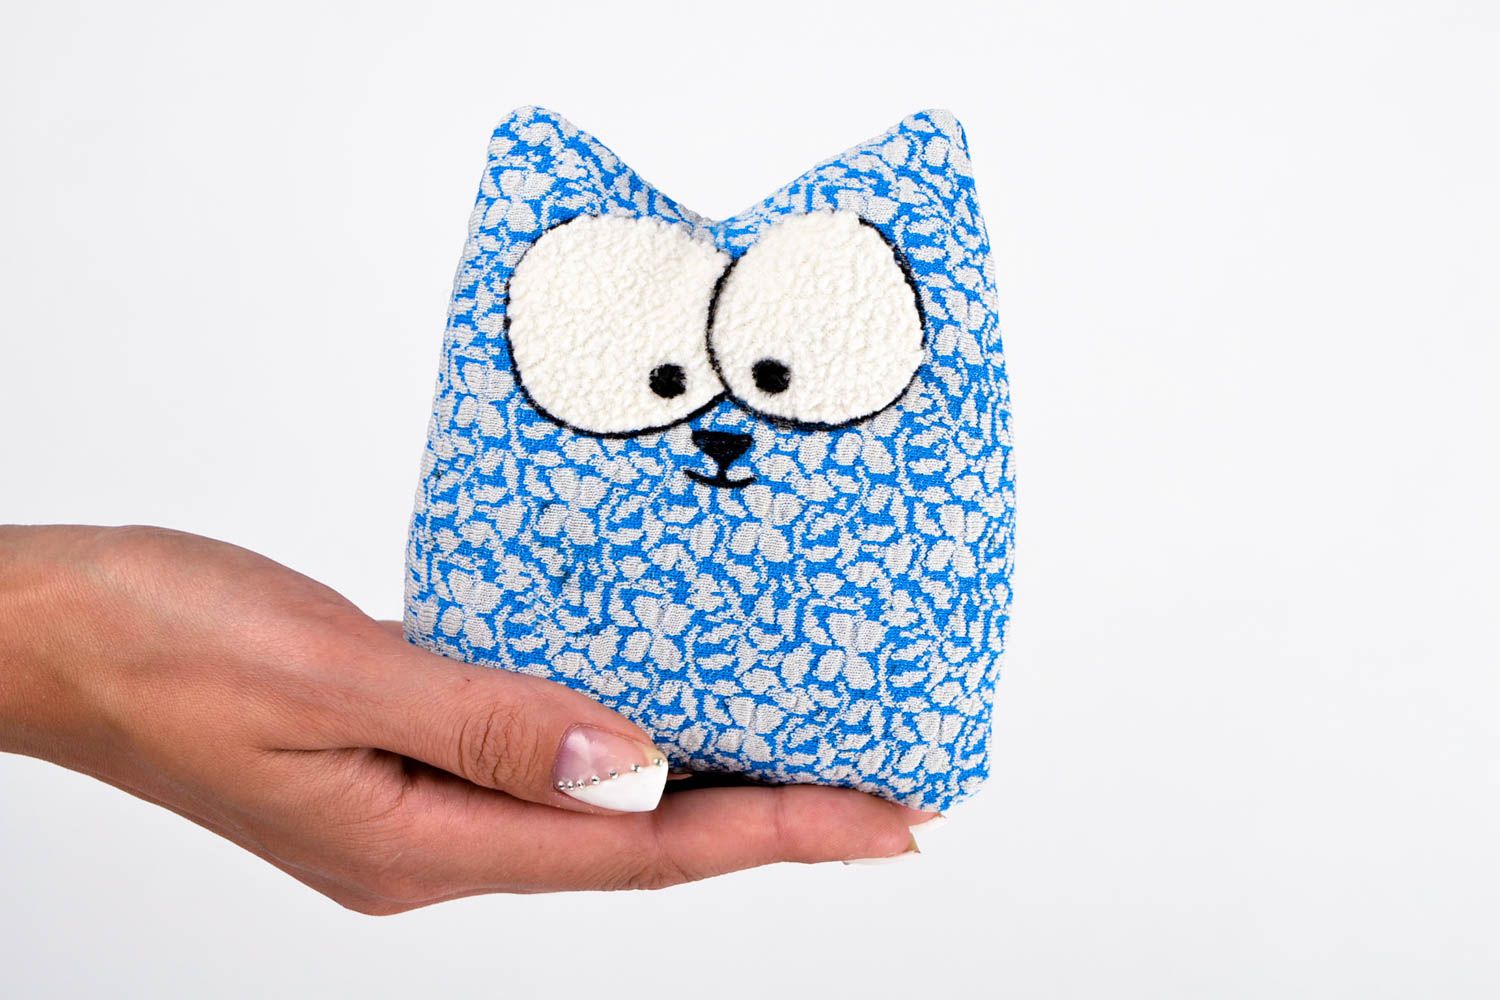 Игрушка из ткани игрушка кот ручной работы авторская игрушка голубая мягкая фото 2